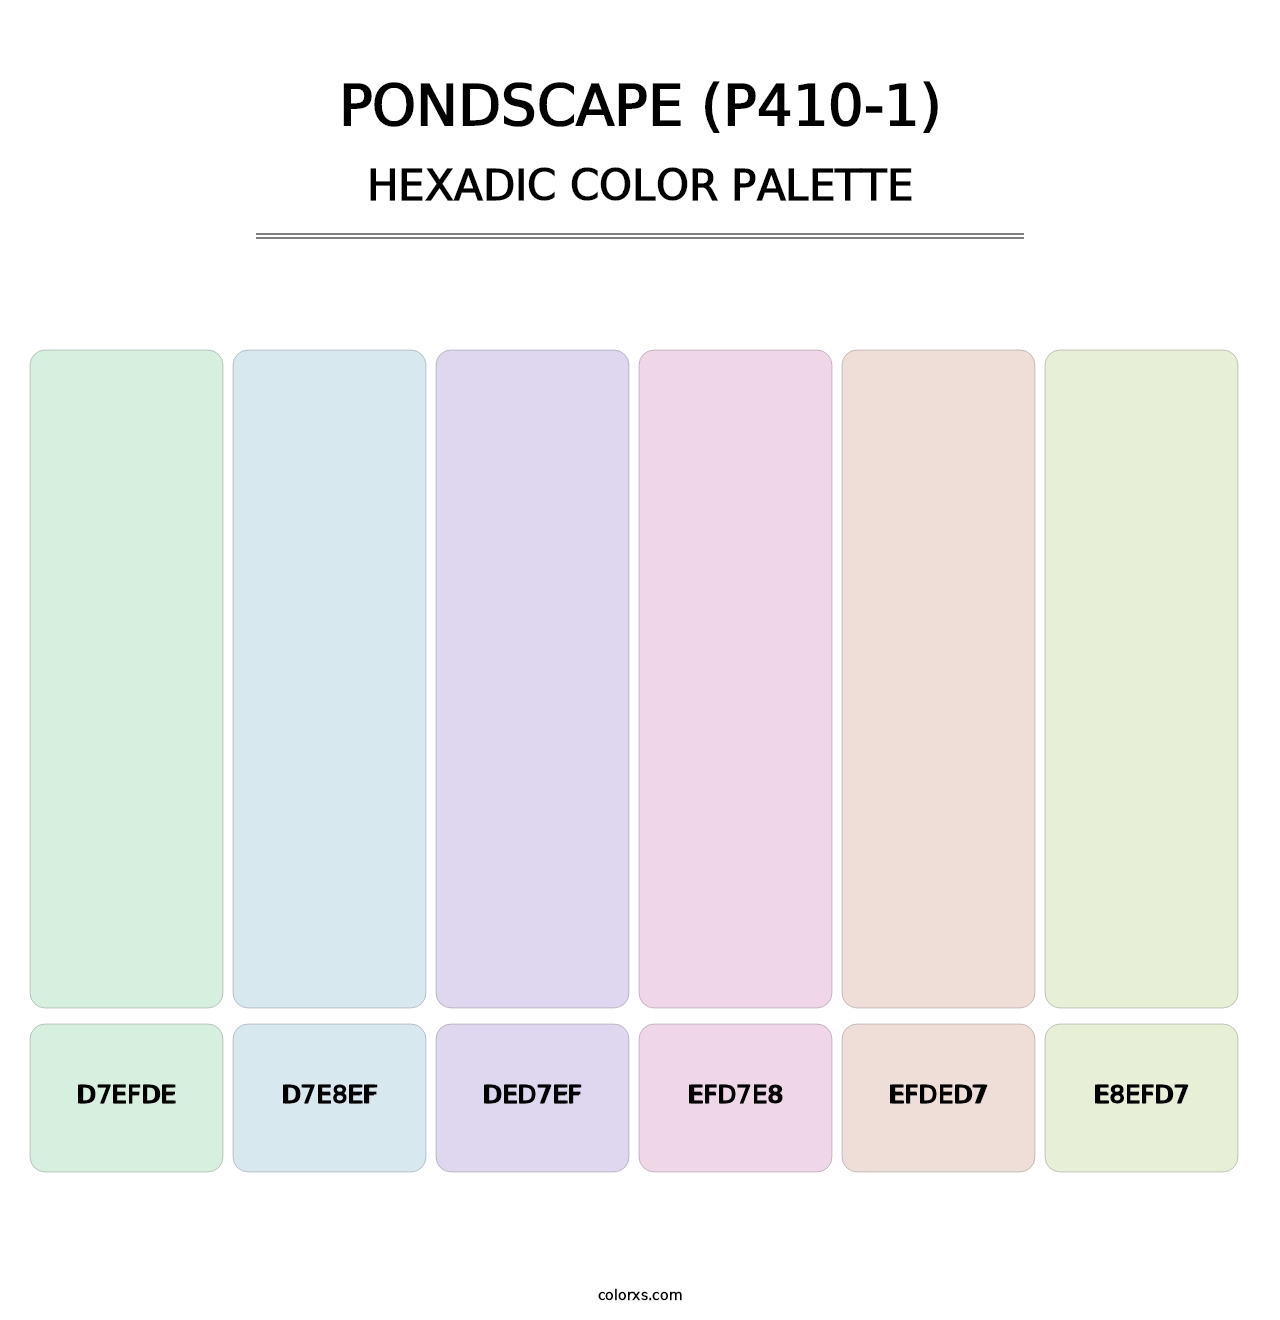 Pondscape (P410-1) - Hexadic Color Palette